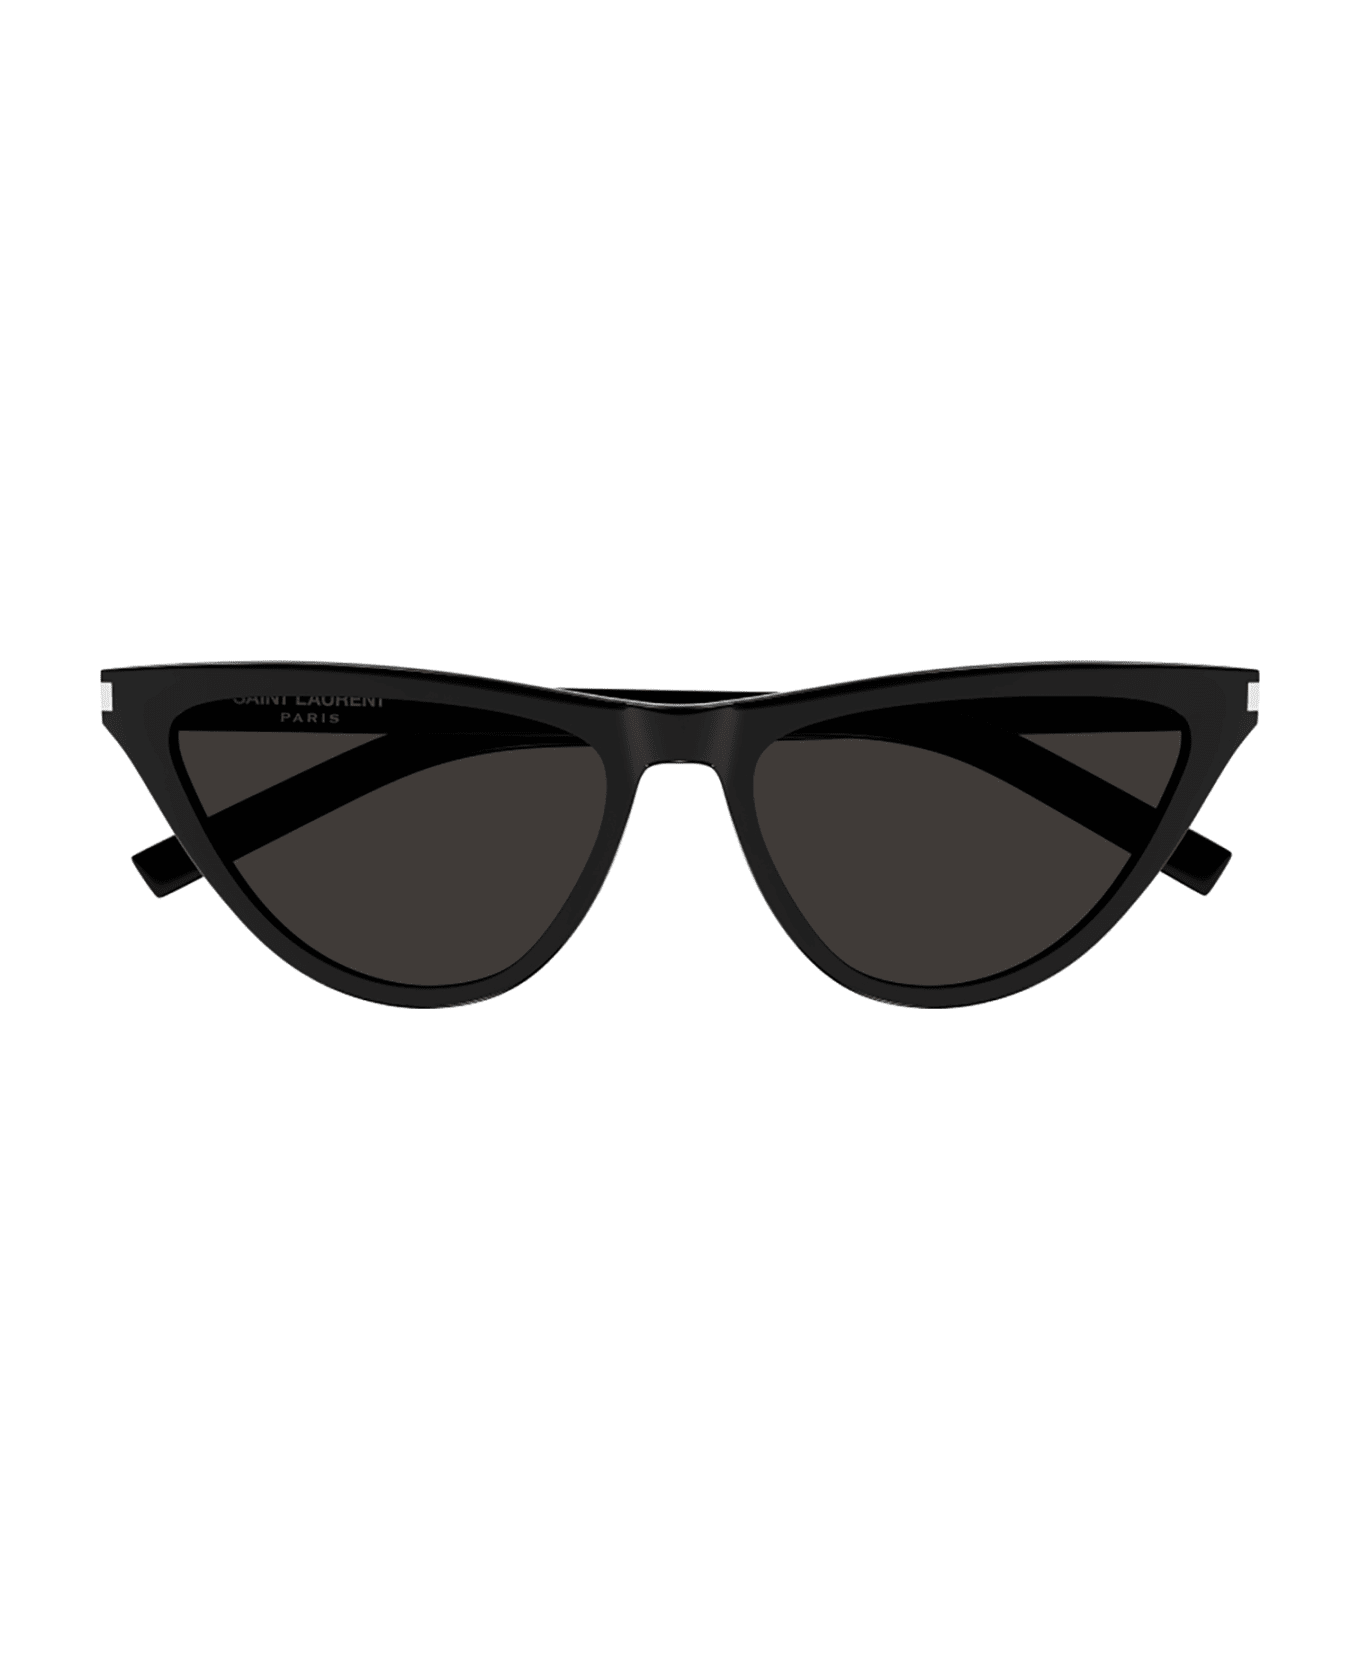 Saint Laurent Eyewear SL 550 SLIM Sunglasses - Black Black Black